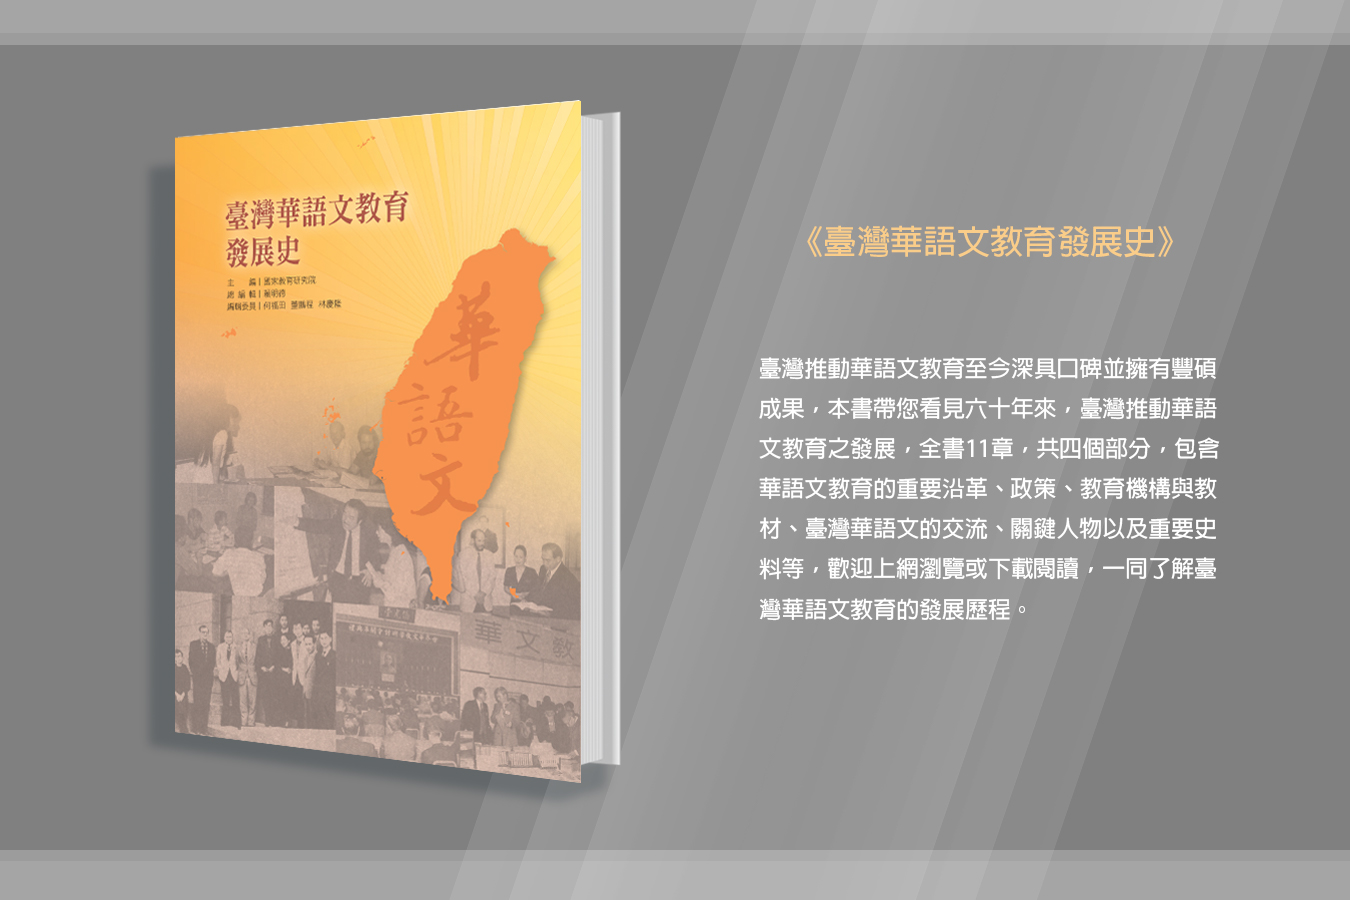 《臺灣華語文教育發展史》邀請您一同鑑往知來